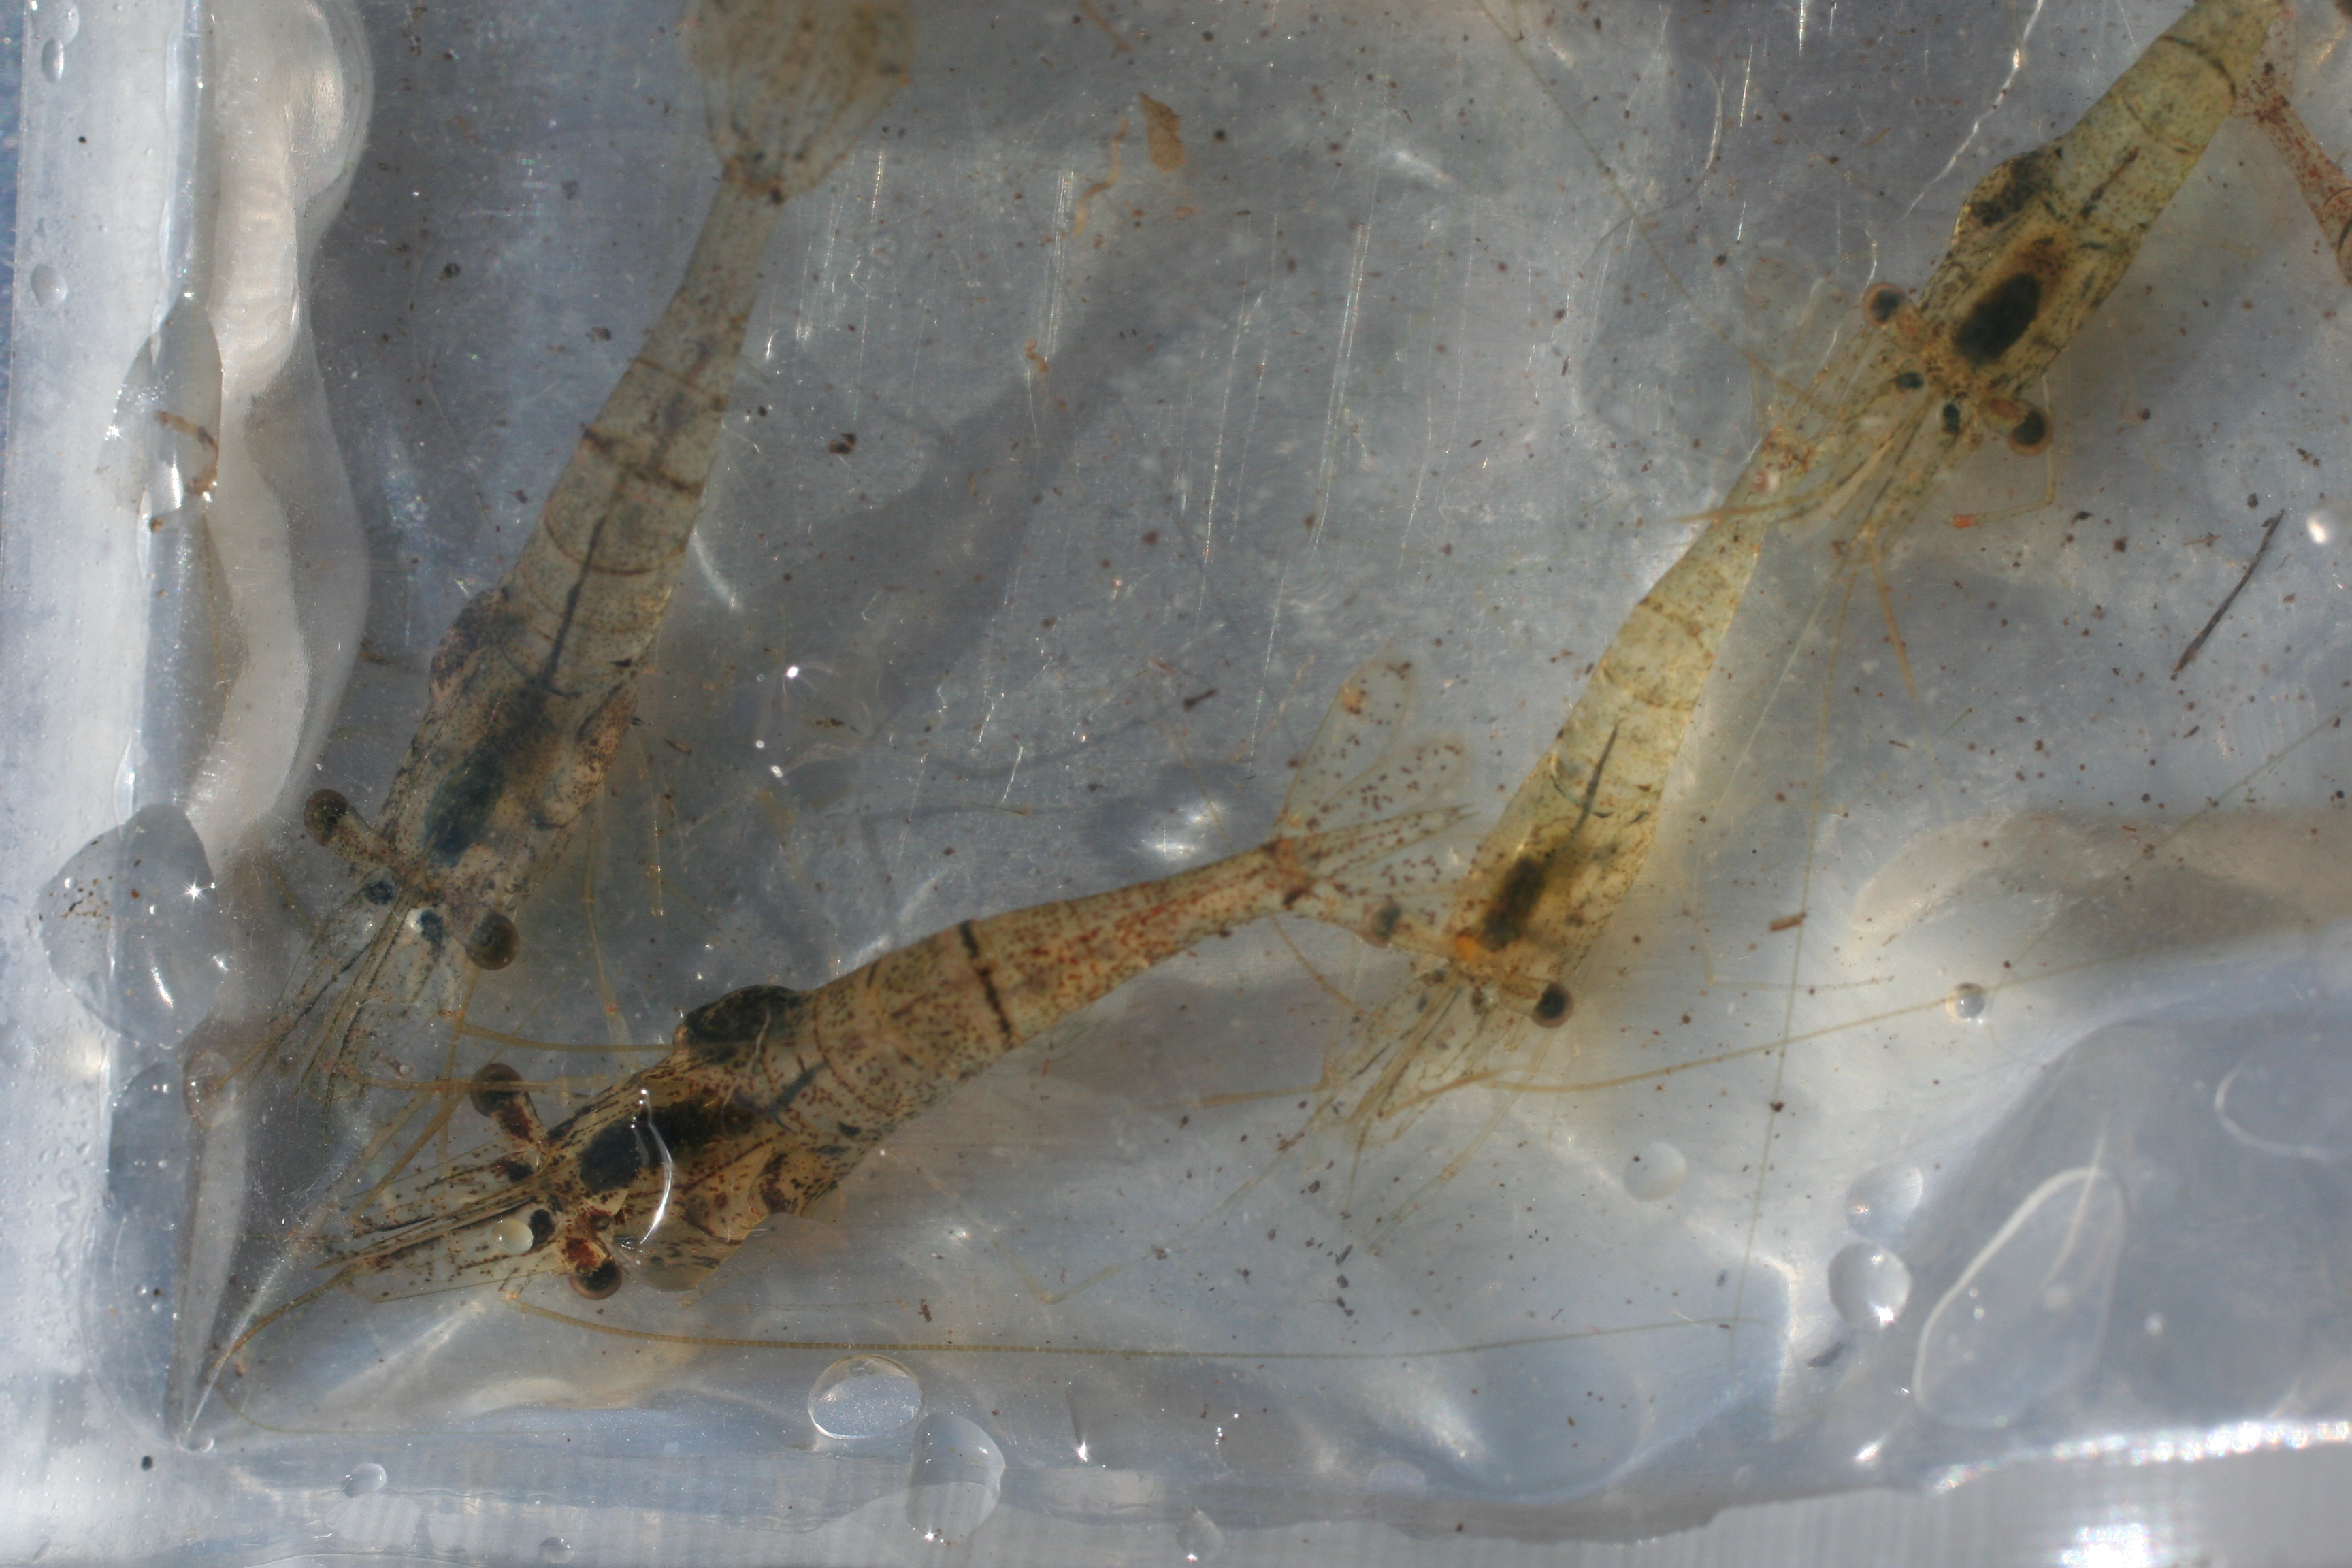 Palaemonid shrimp at Shark River